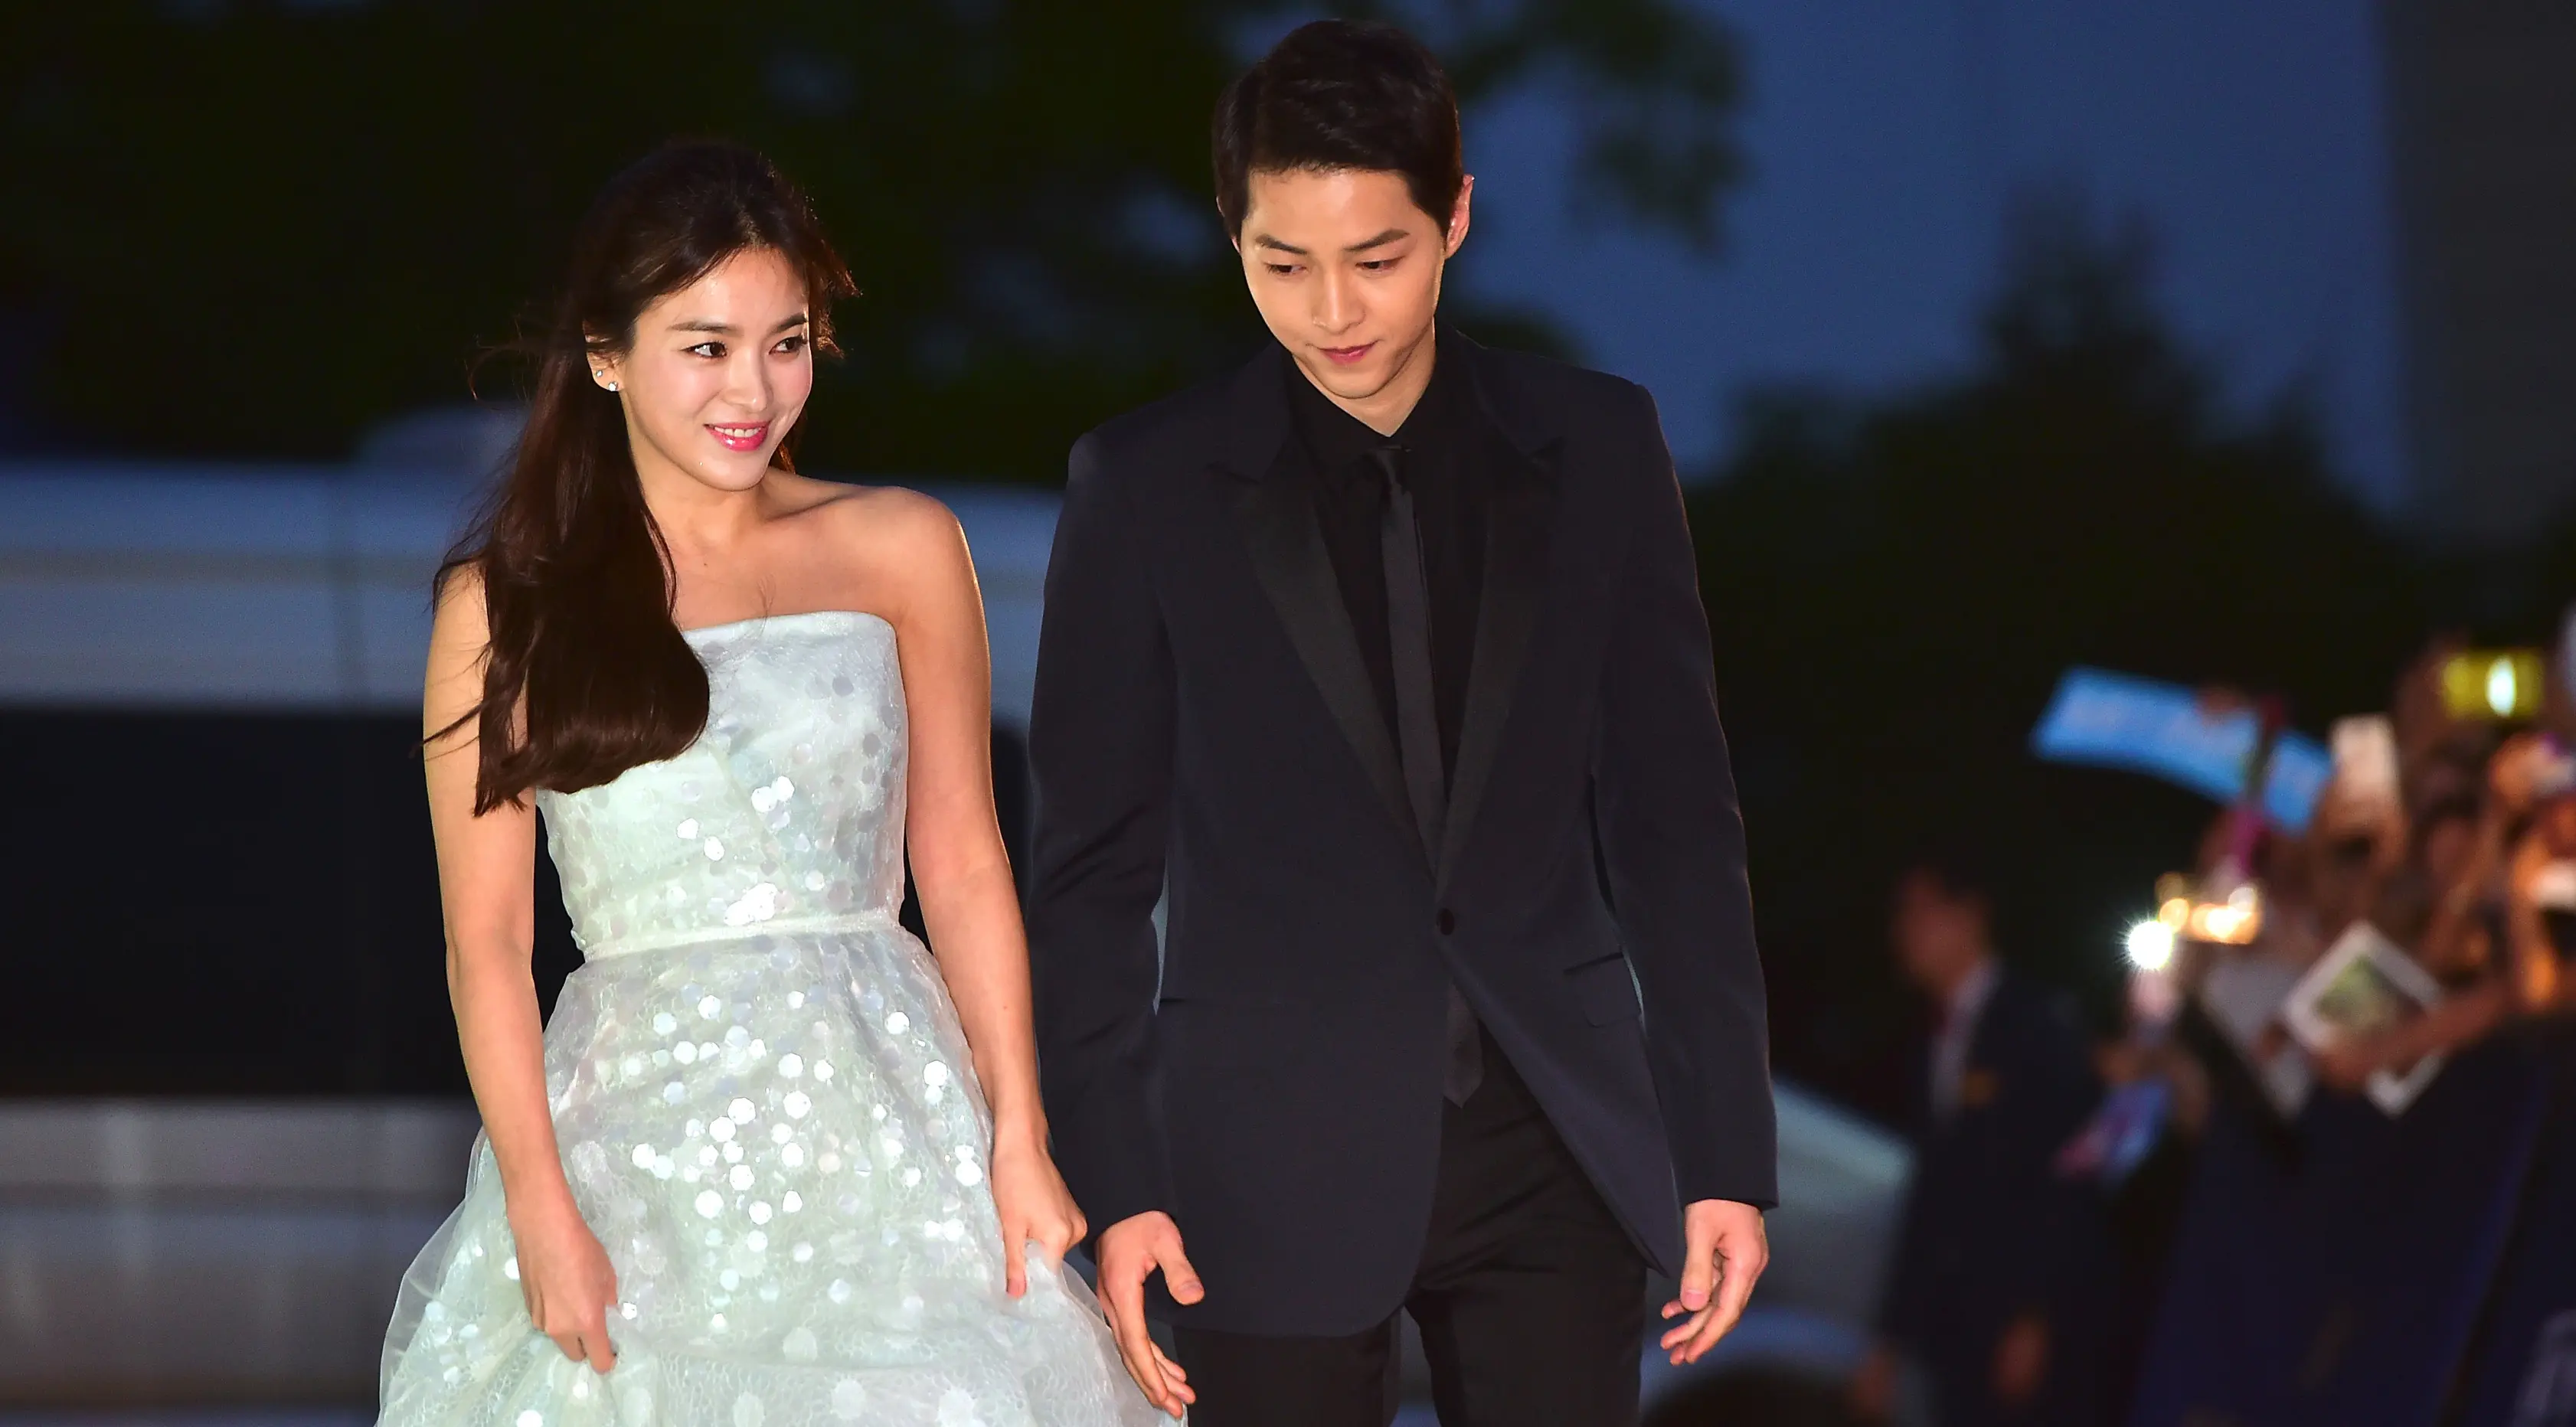 Song Joong Ki dan Song Hye Kyo berjalan di karpet merah ajang penghargaan The 52nd Baeksang Art Awards di Seoul, 3 Juni 2016. Sebelum kabar pernikahan mereka, Song Song Couple membuat publik penasaran dengan teka-teki hubungan keduanya. (JUNG YEON-JE/AFP)